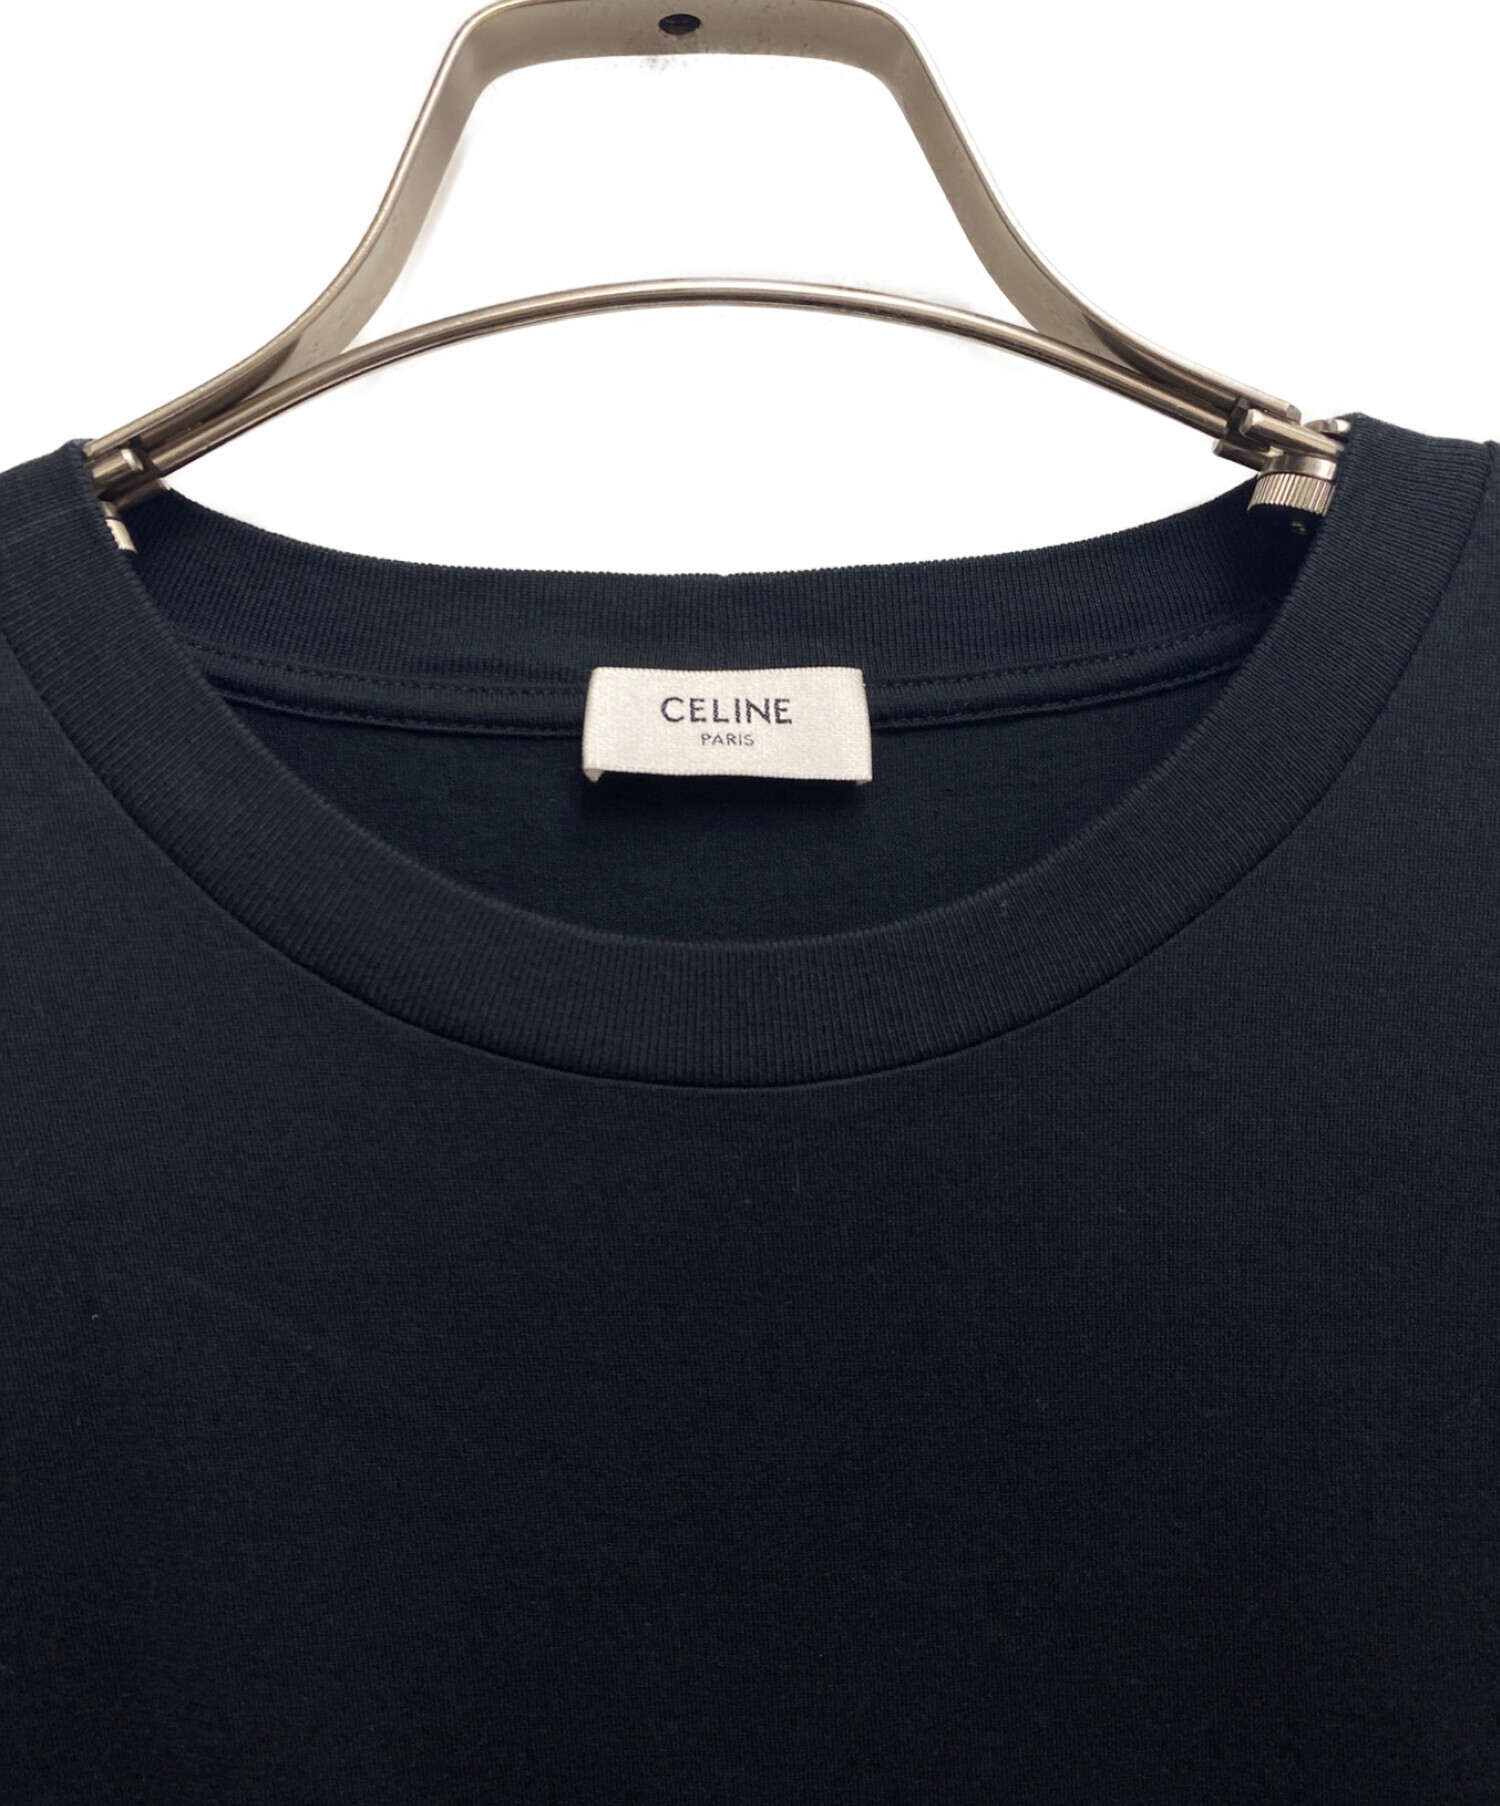 CELINE (セリーヌ) シャンボールルーズプリントTシャツ ブラック サイズ:S